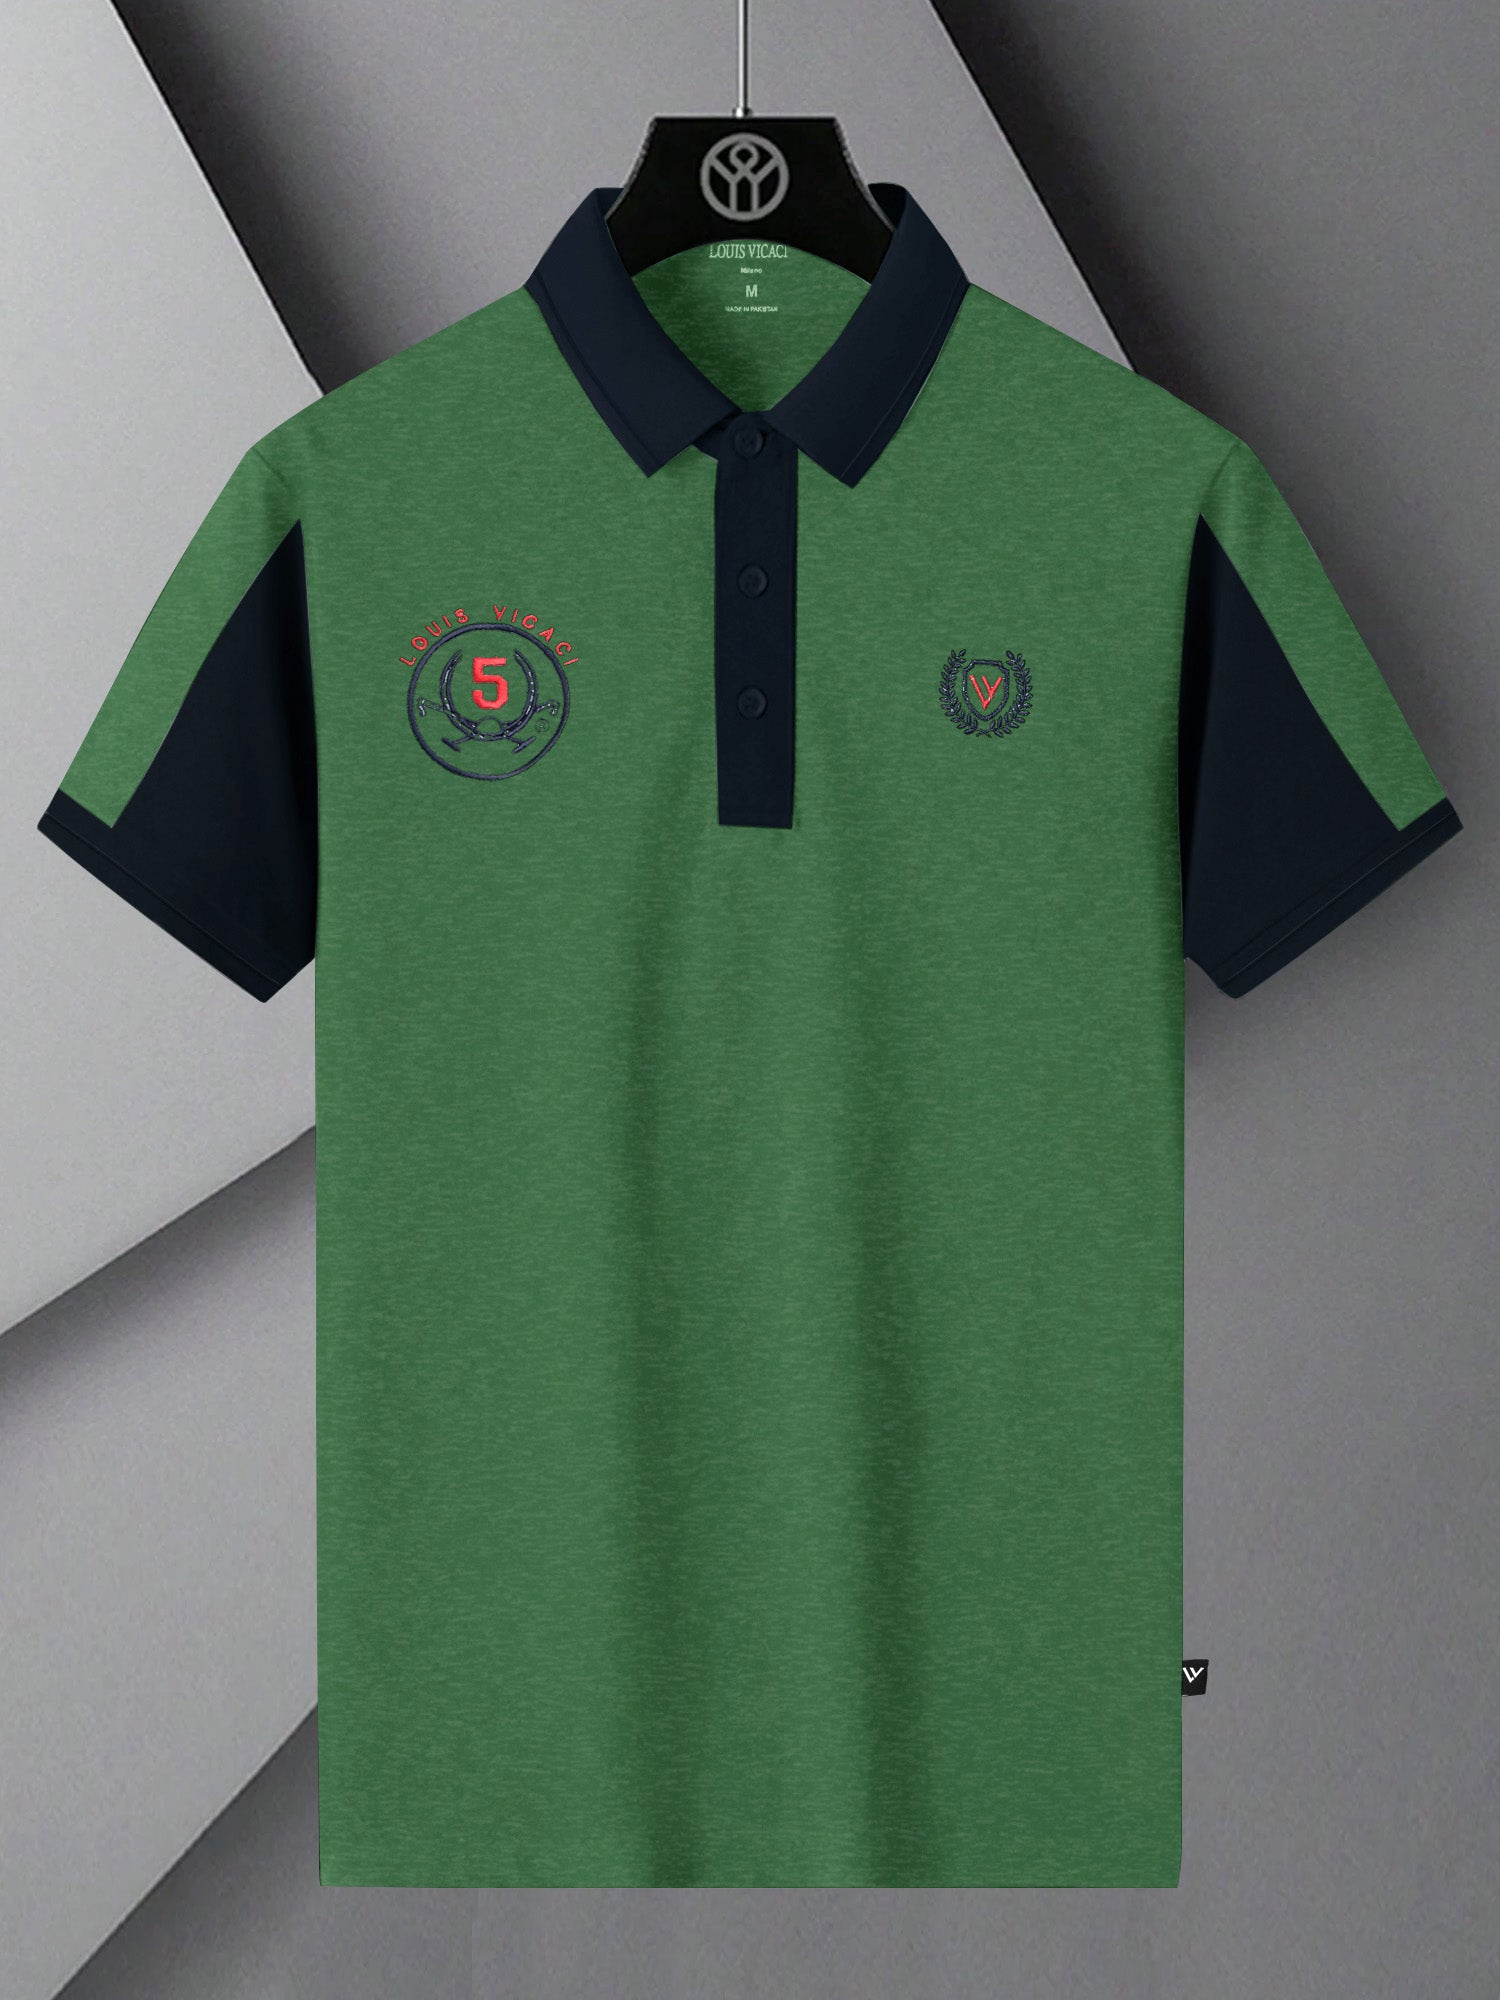 LV Summer Polo Shirt For Men-Green Melange & Dark Navy-SP1542